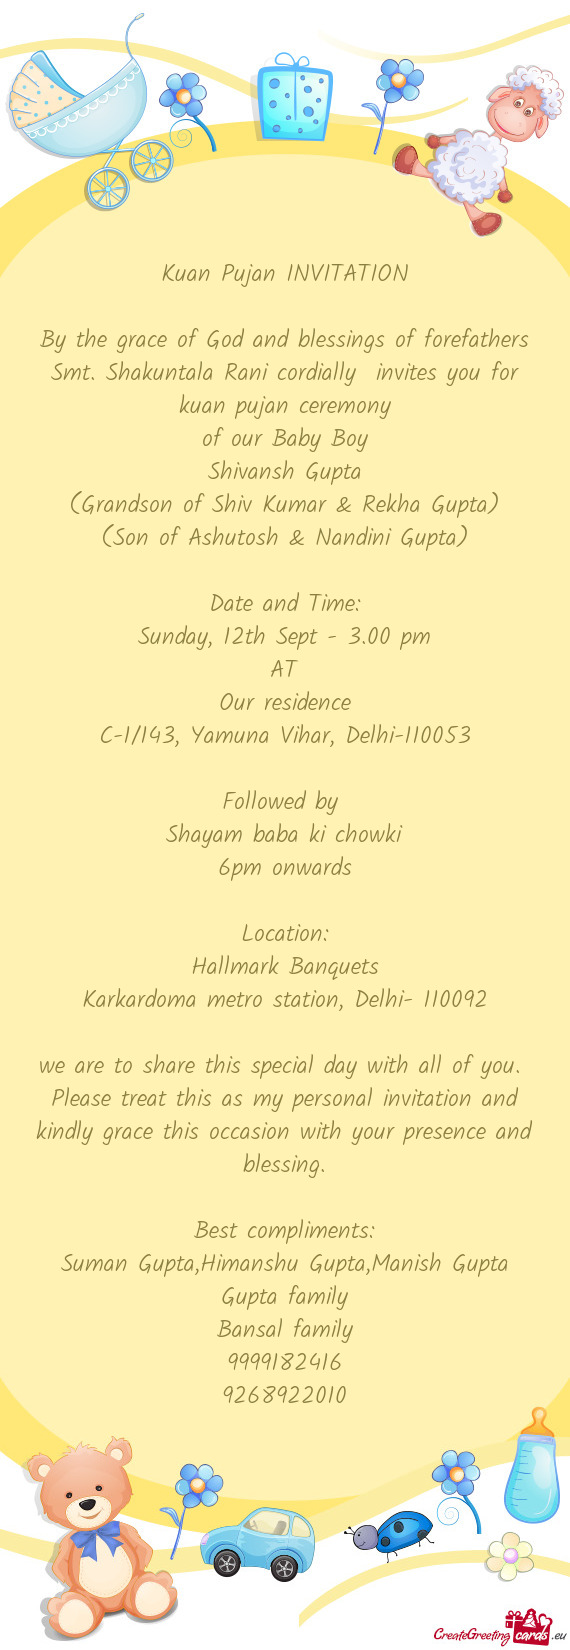 Smt. Shakuntala Rani cordially invites you for kuan pujan ceremony